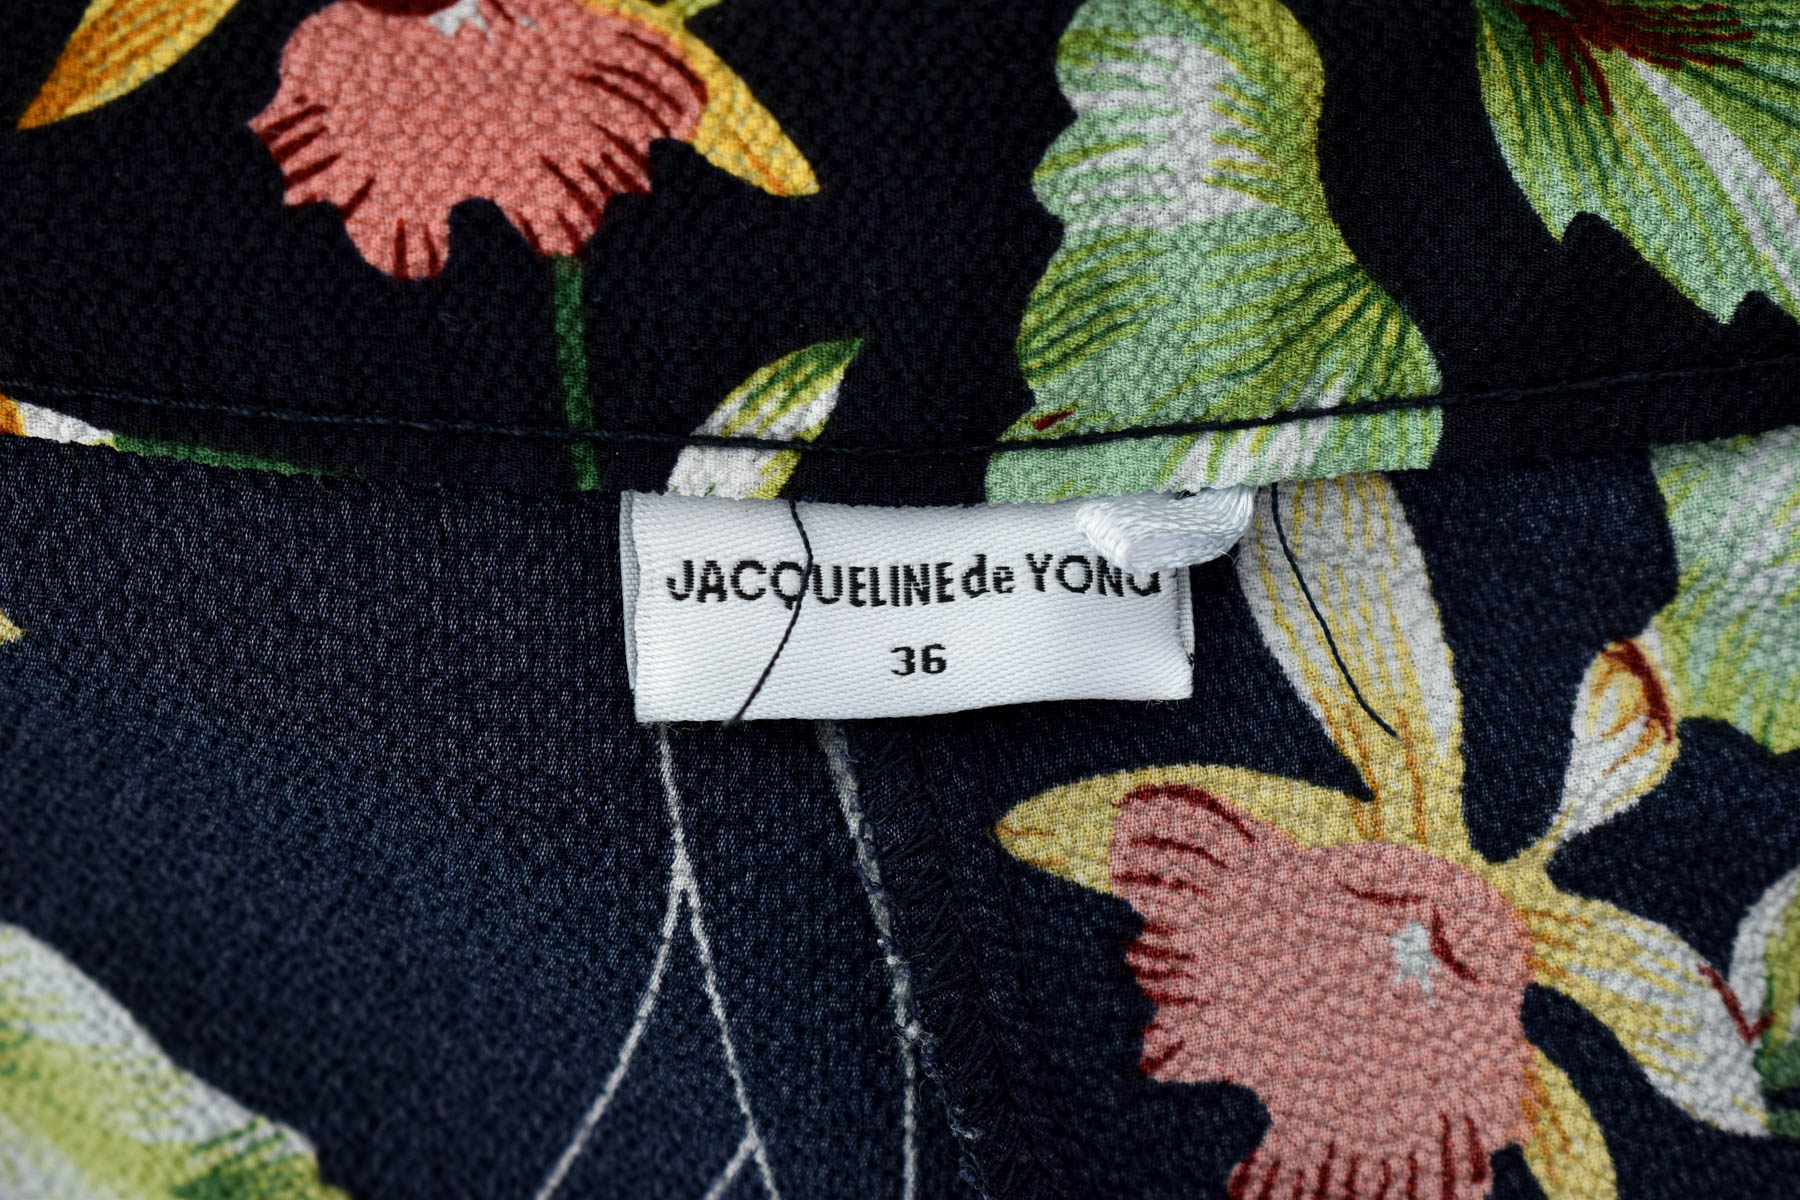 Female shorts - Jacqueline de Yong - 2